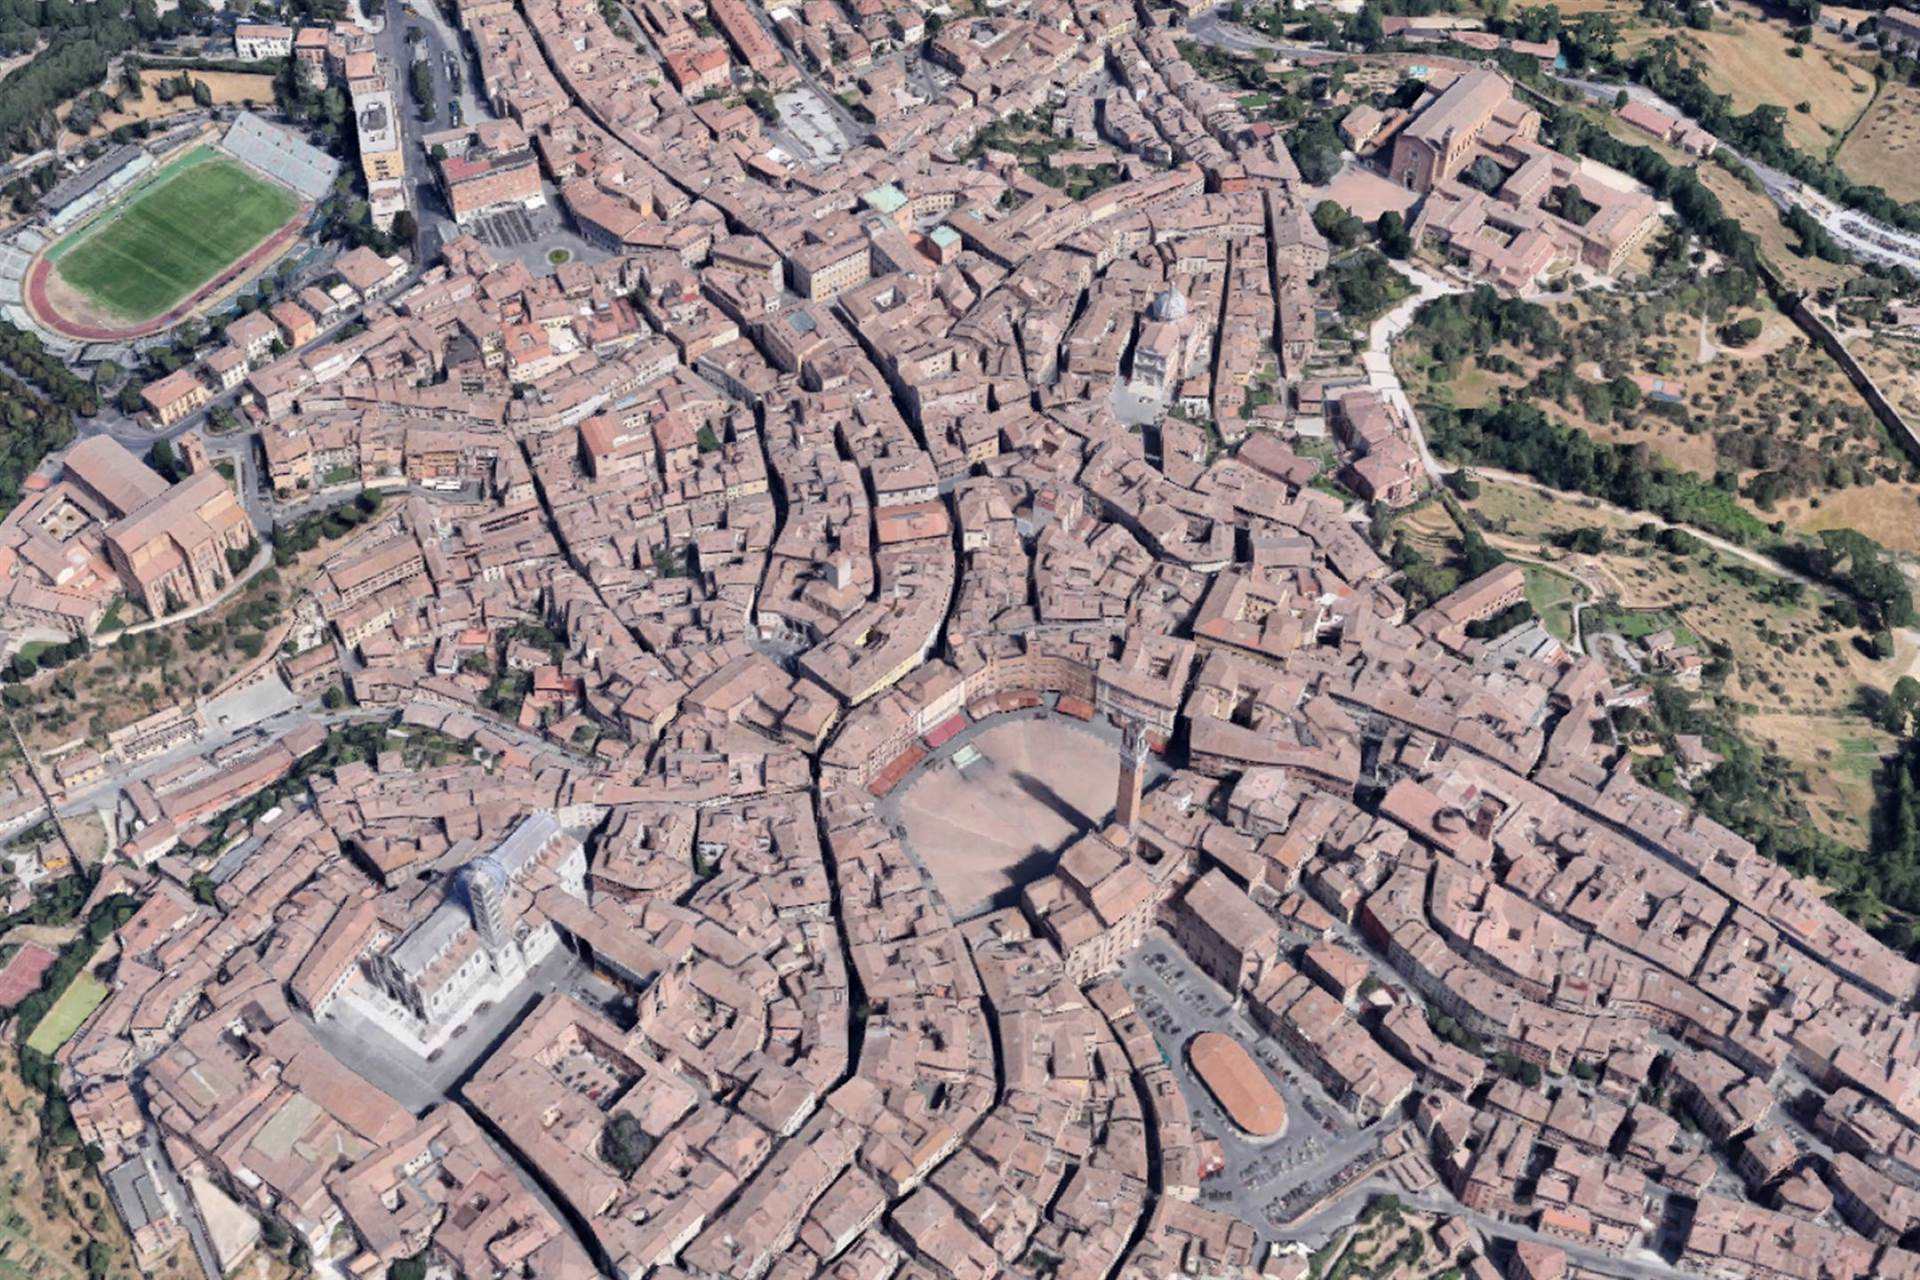 Cedesi licenza di ristorazione in zona 1 del centro storico di Siena.